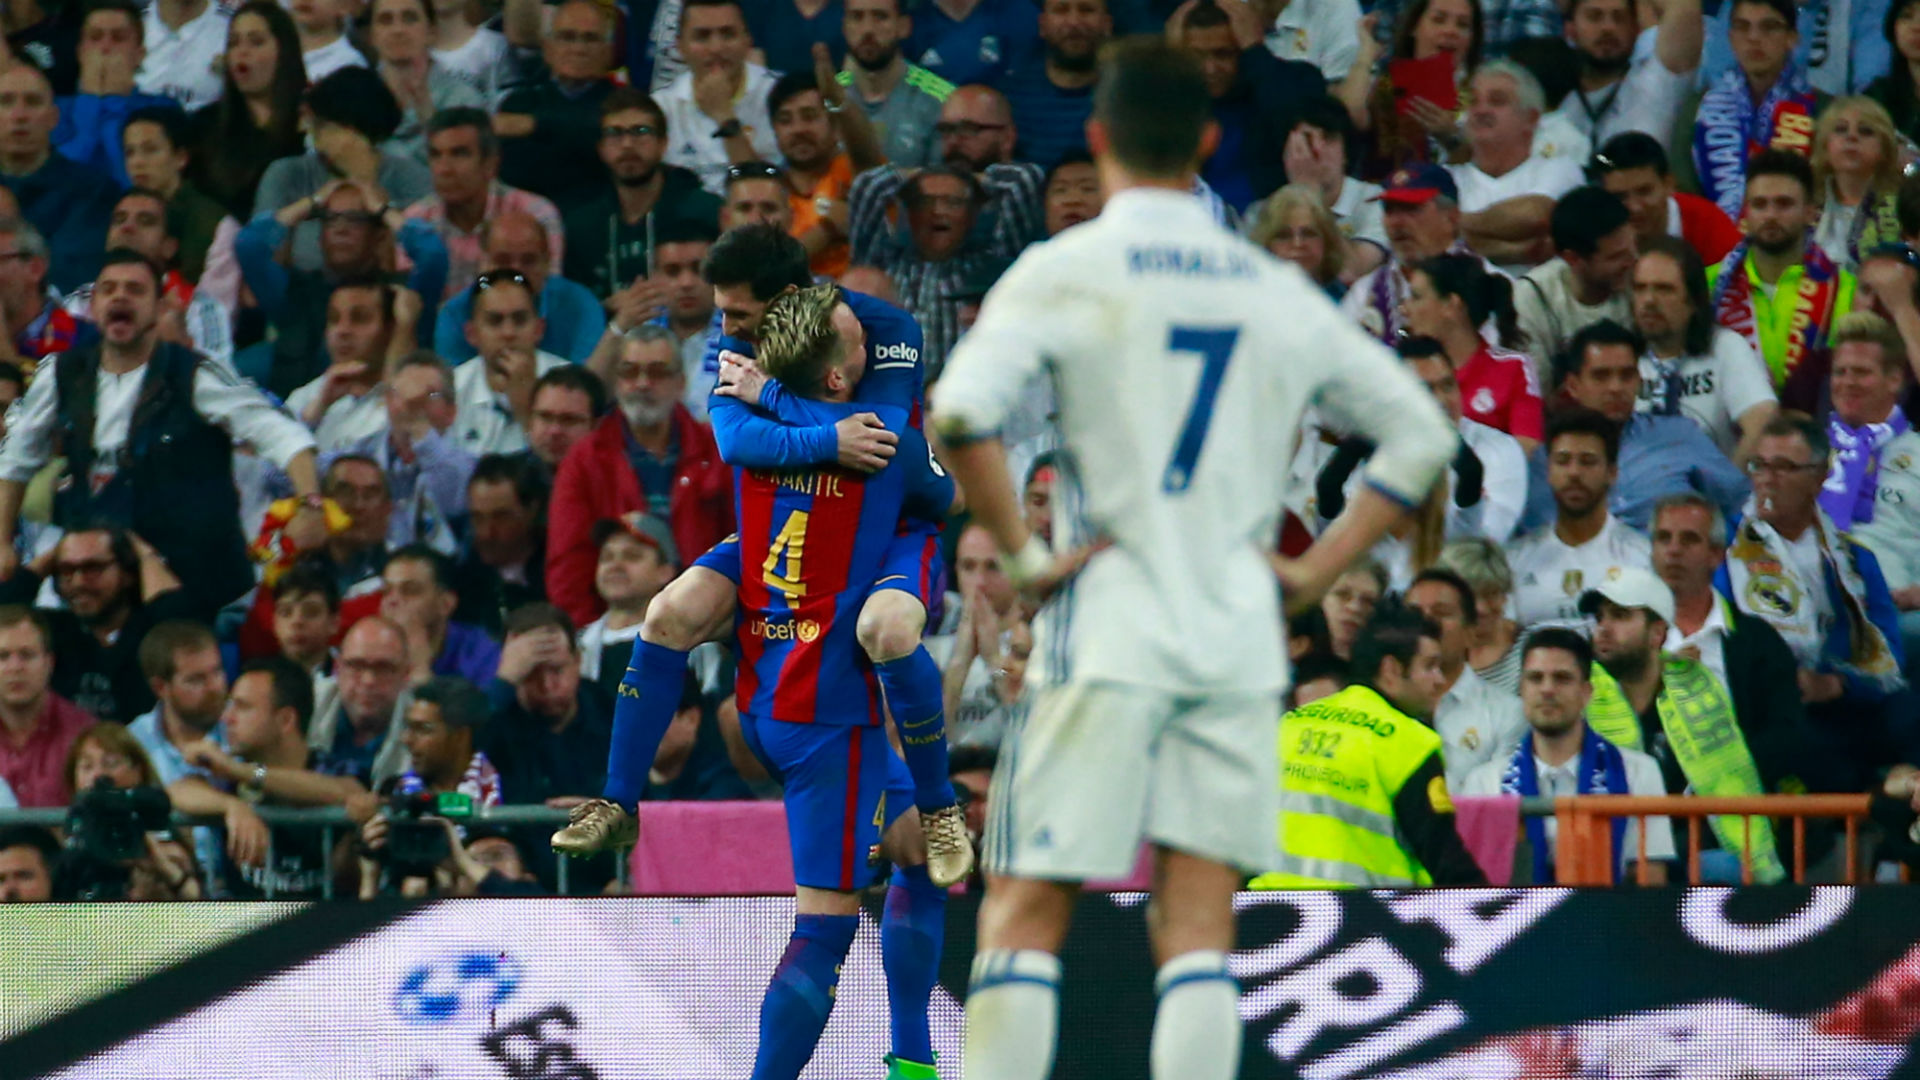 Lionel Messi vs Cristiano Ronaldo: Does the Ballon d'Or settle the